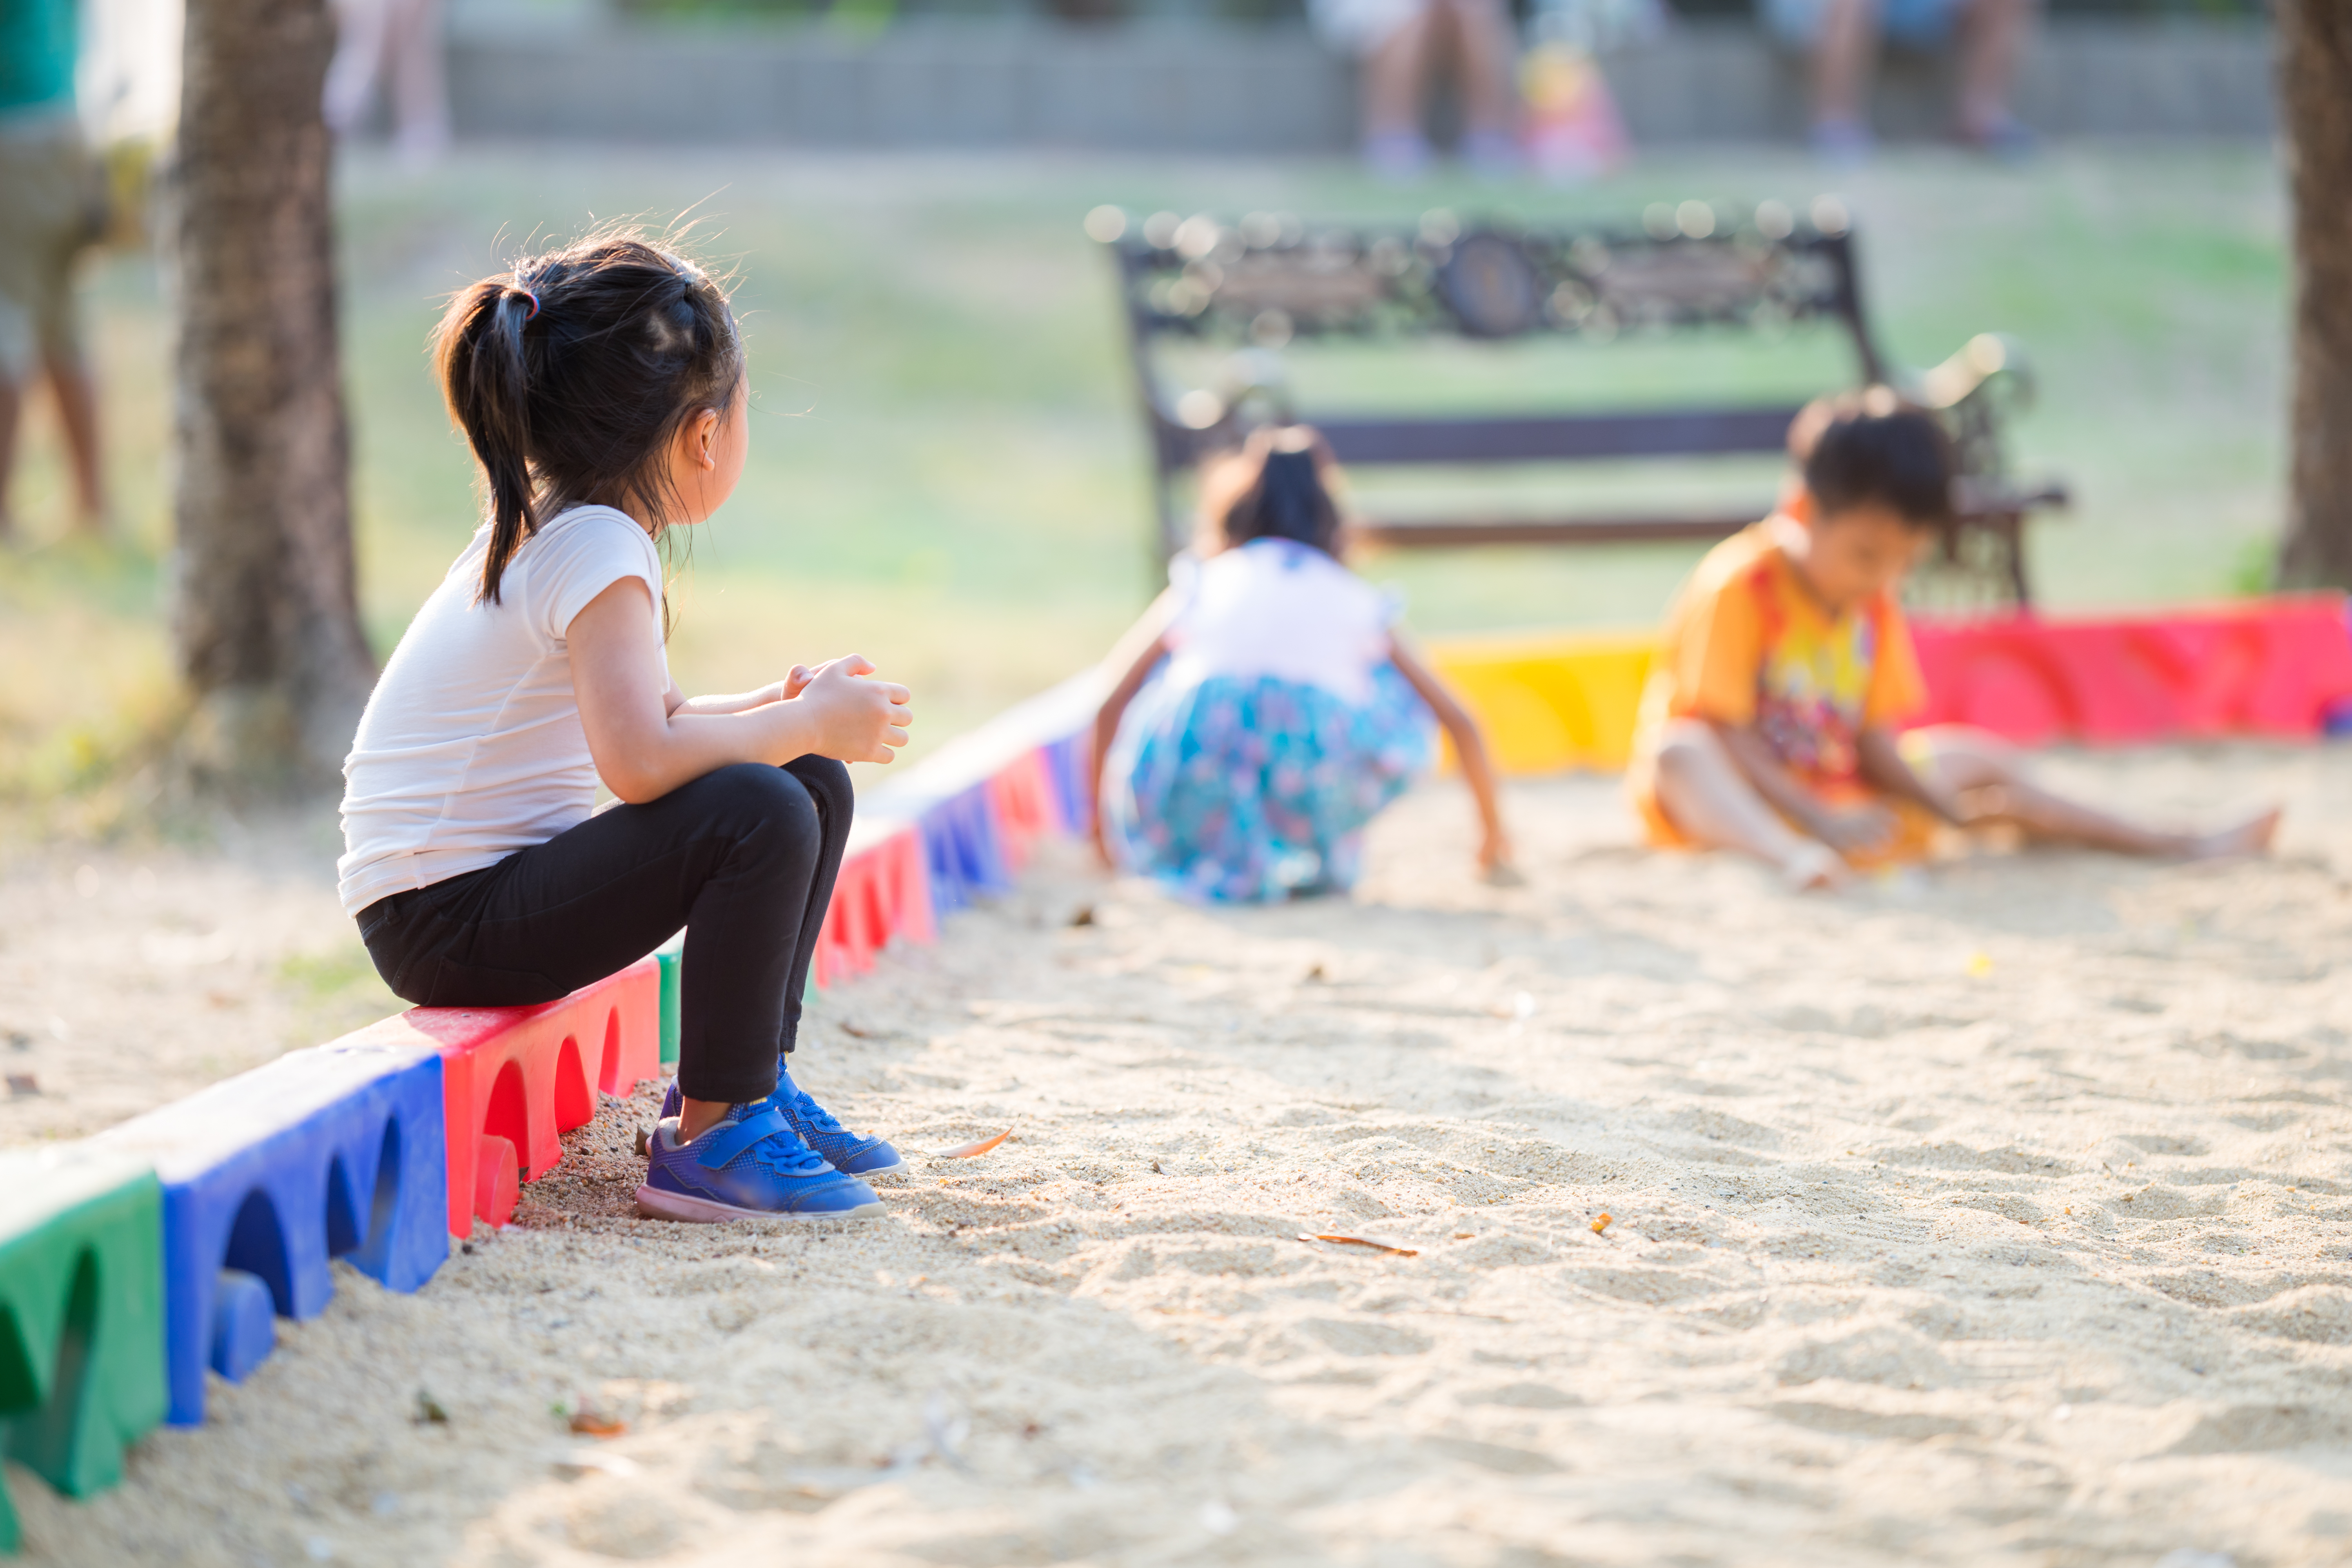 Des enfants seuls sur le terrain de jeu | Source : Shutterstock